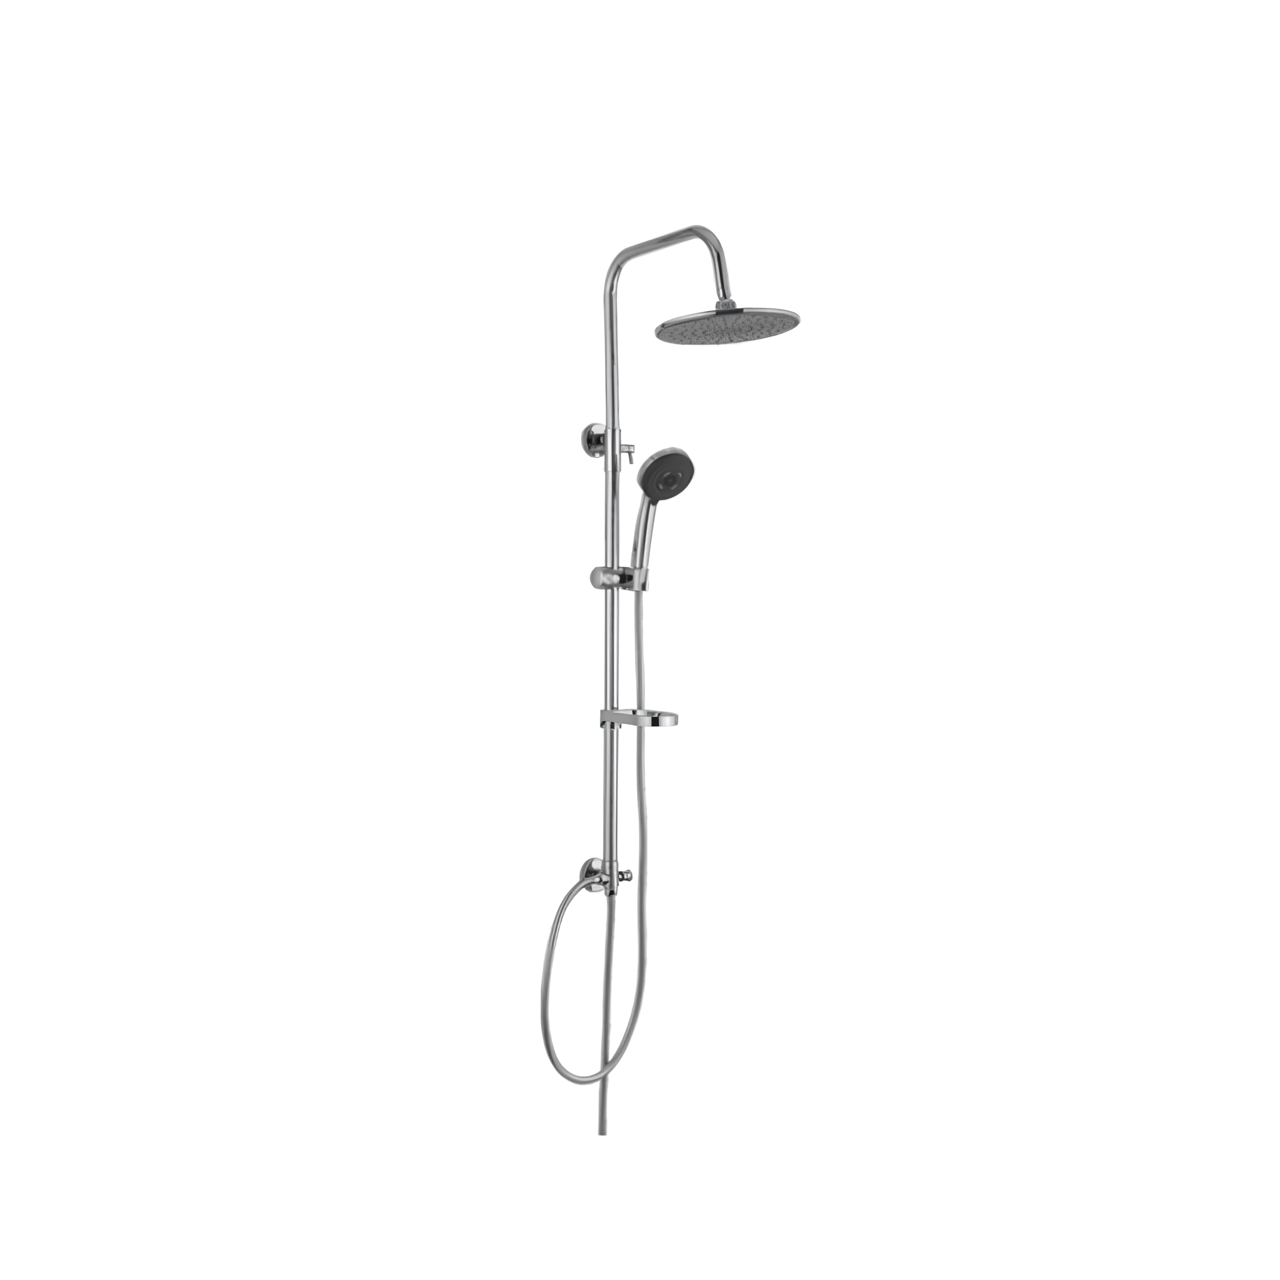 L707C  Rain Shower heads system including rain fall shower head and handheld shower head with height adjustable holder shower hose Chrome Shower Set